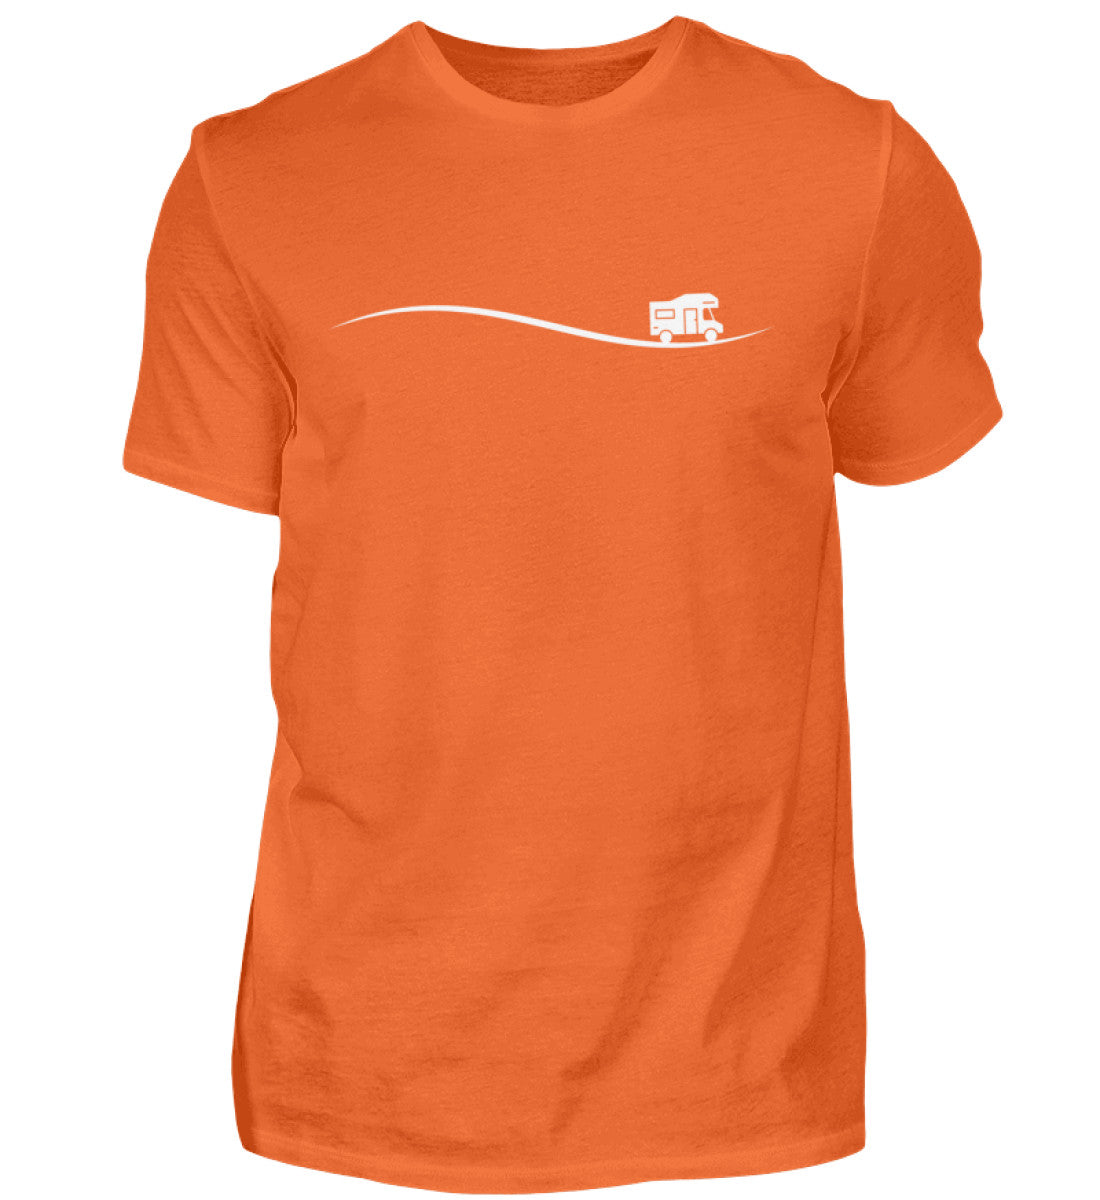 UNTERWEGS - Herren Shirt in der Farbe Orange Crush